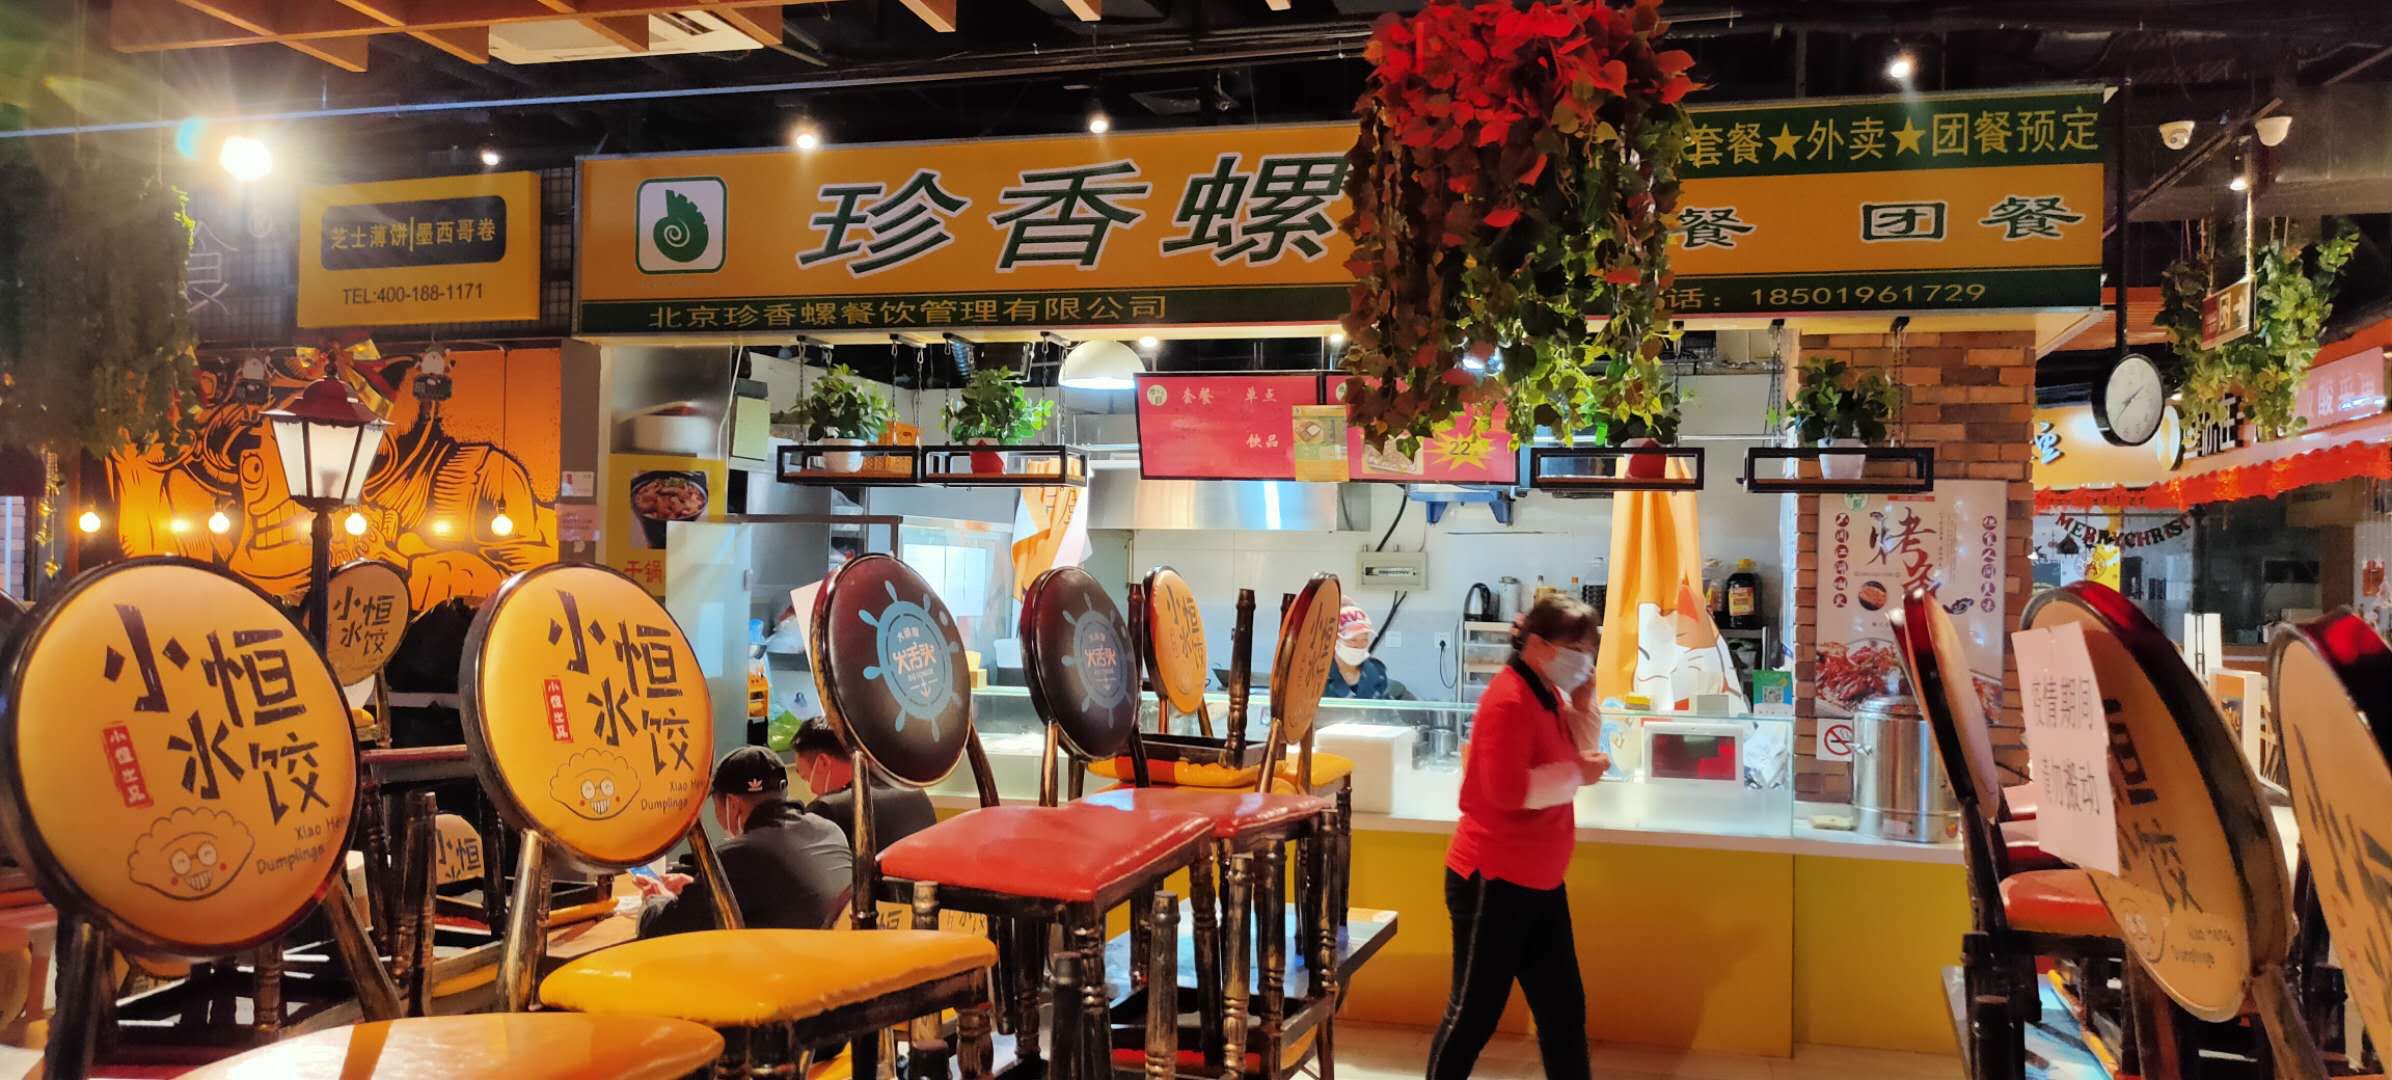 工作快餐哪家划算_料理包 快餐相关-北京珍香螺餐饮管理有限公司